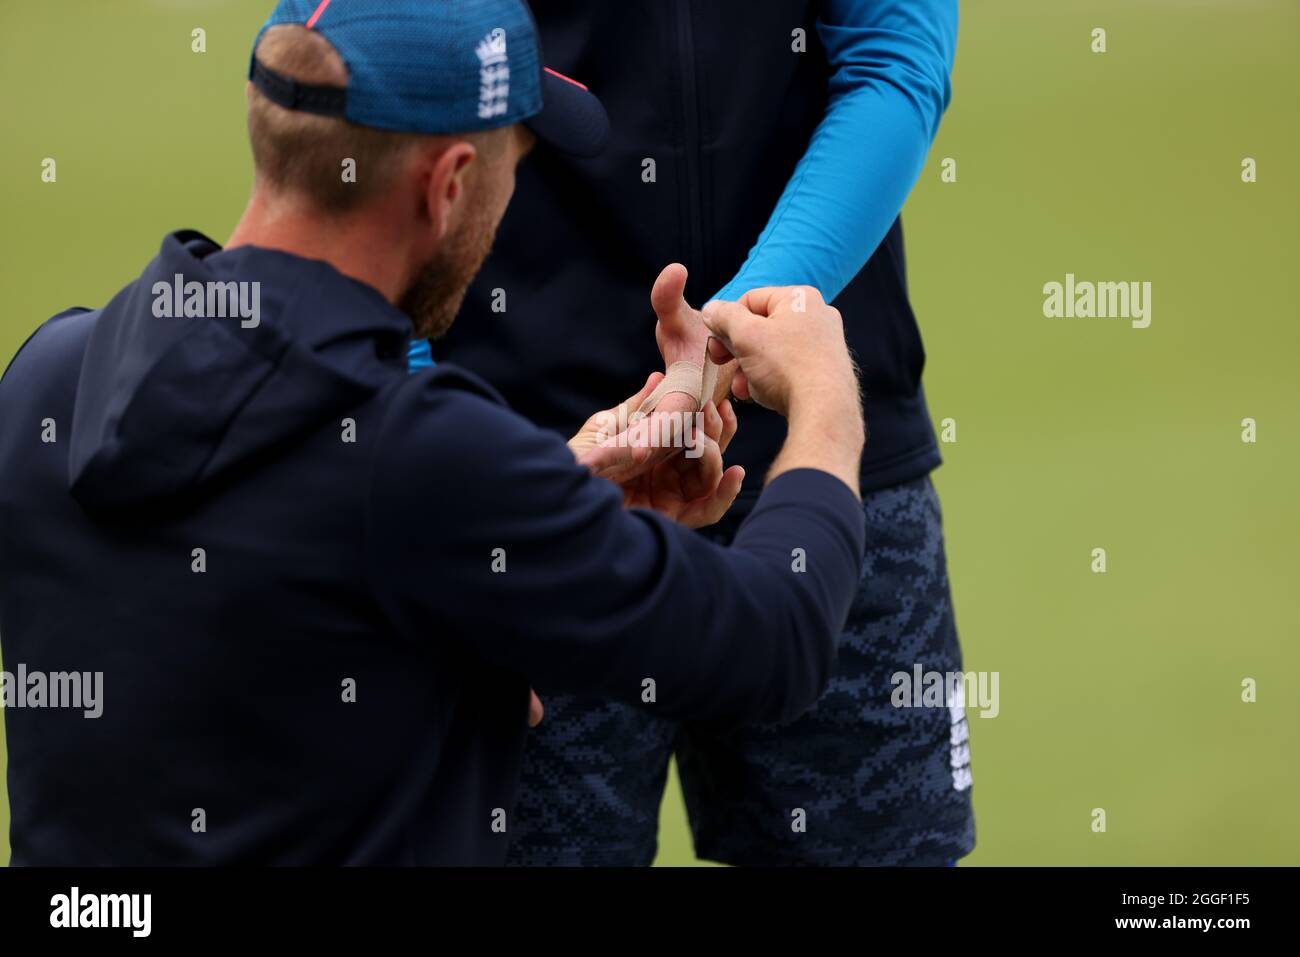 Englands Ollie Pope hat seine Hand während einer Netzsitzung im Kia Oval, London, geschnallt. Bilddatum: Dienstag, 31. August 2021. Stockfoto